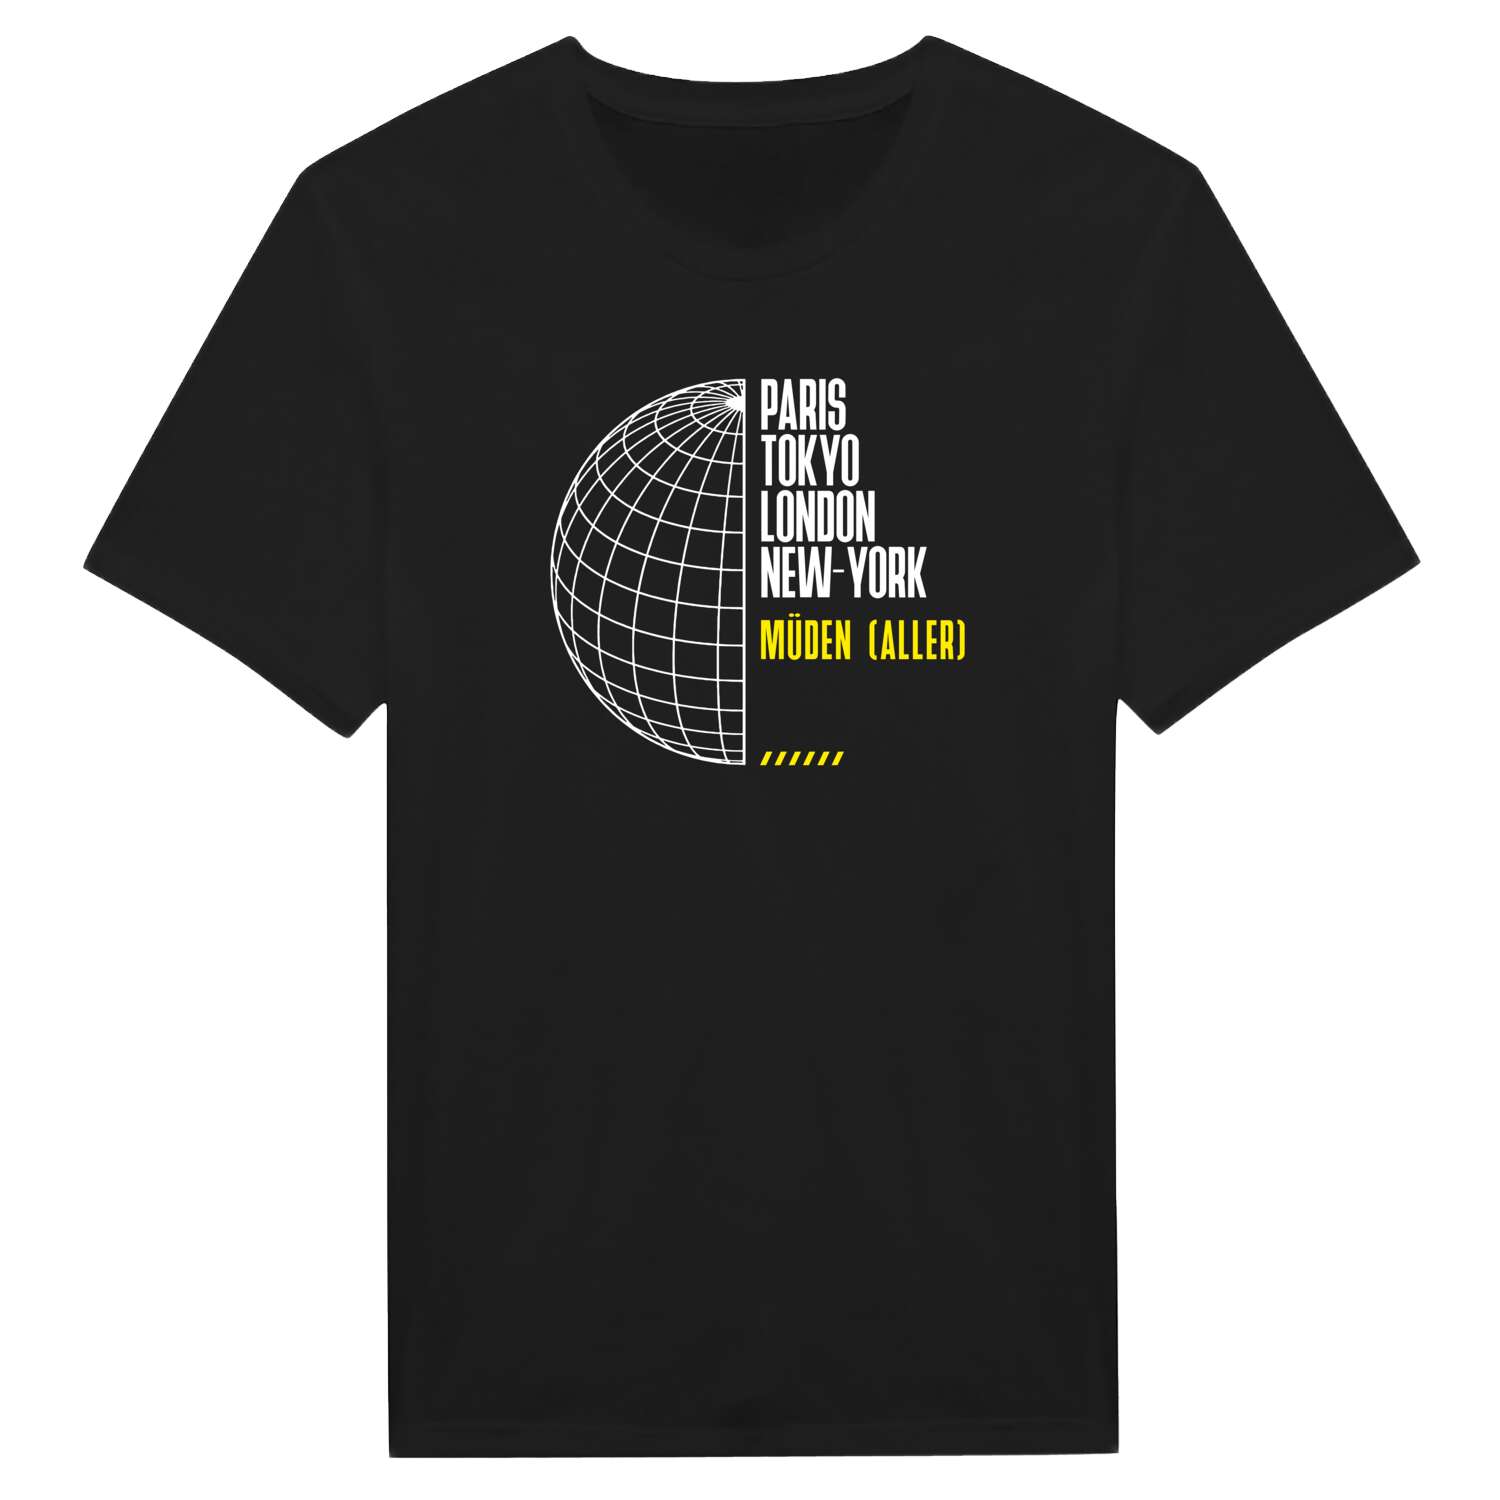 Müden (Aller) T-Shirt »Paris Tokyo London«